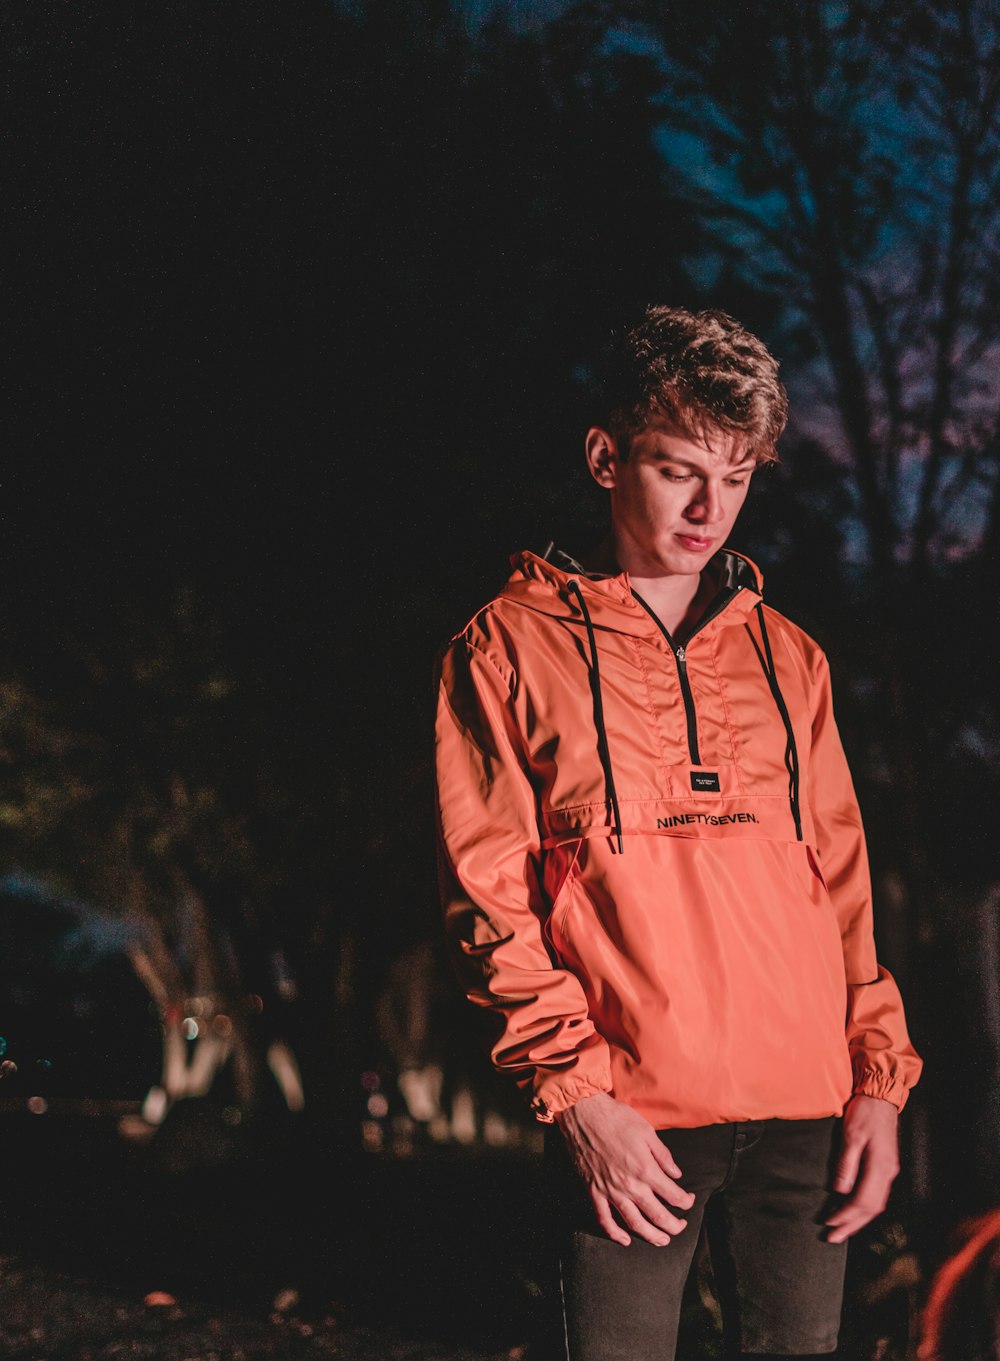 オレンジ色のパーカーを着て暗闇の中に立つ若い男